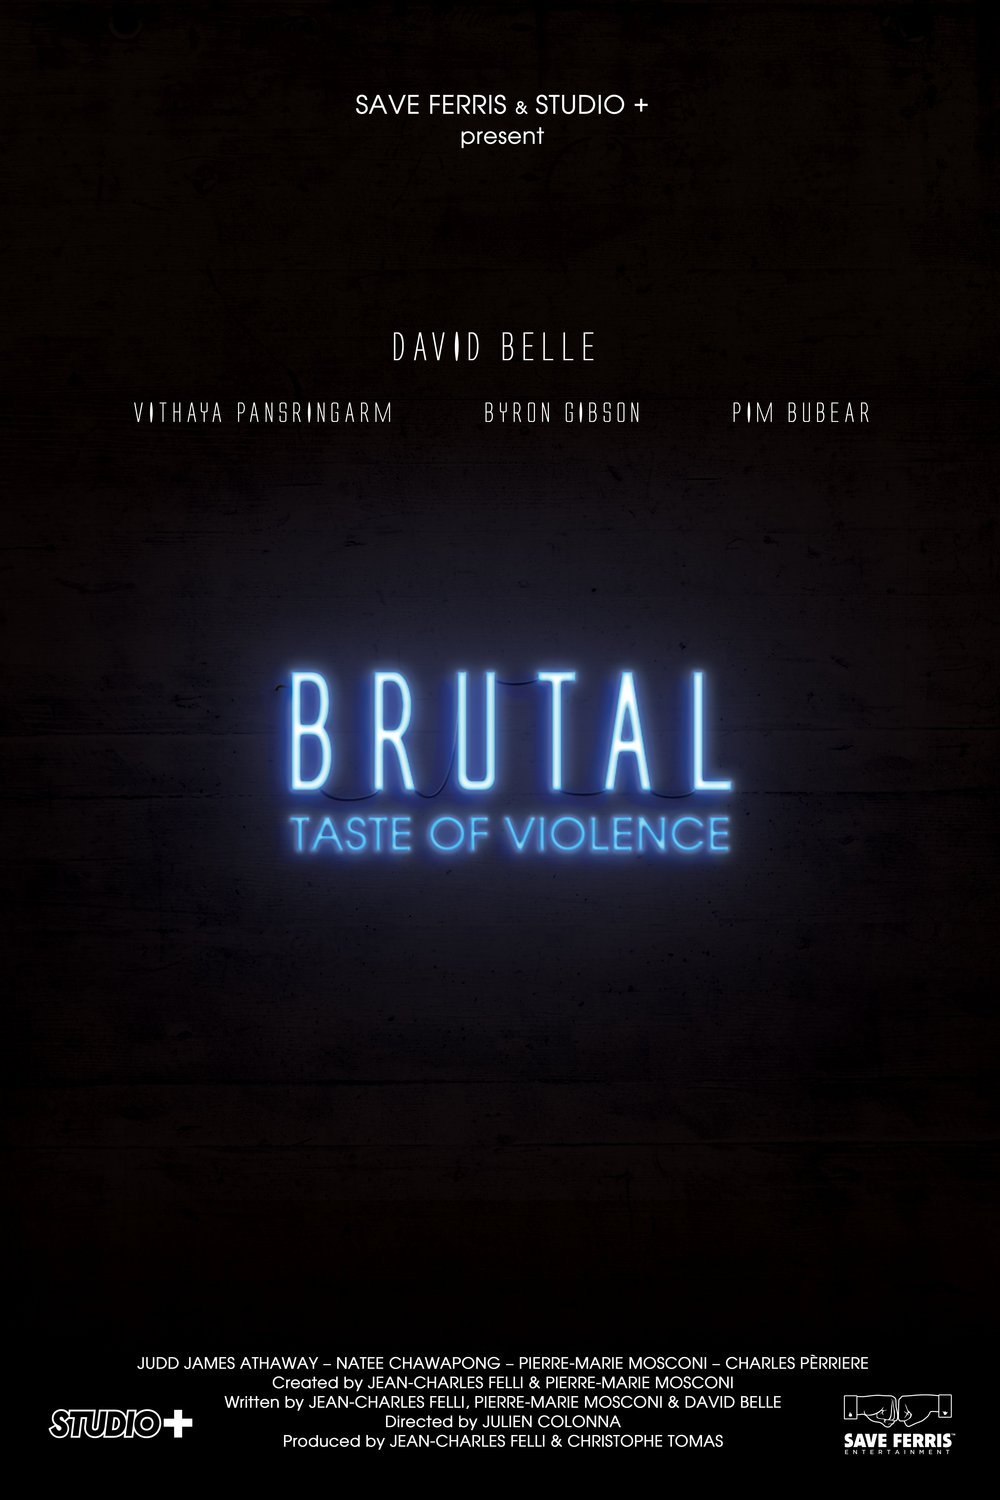 Poster of the movie Brutal: Taste of Violence